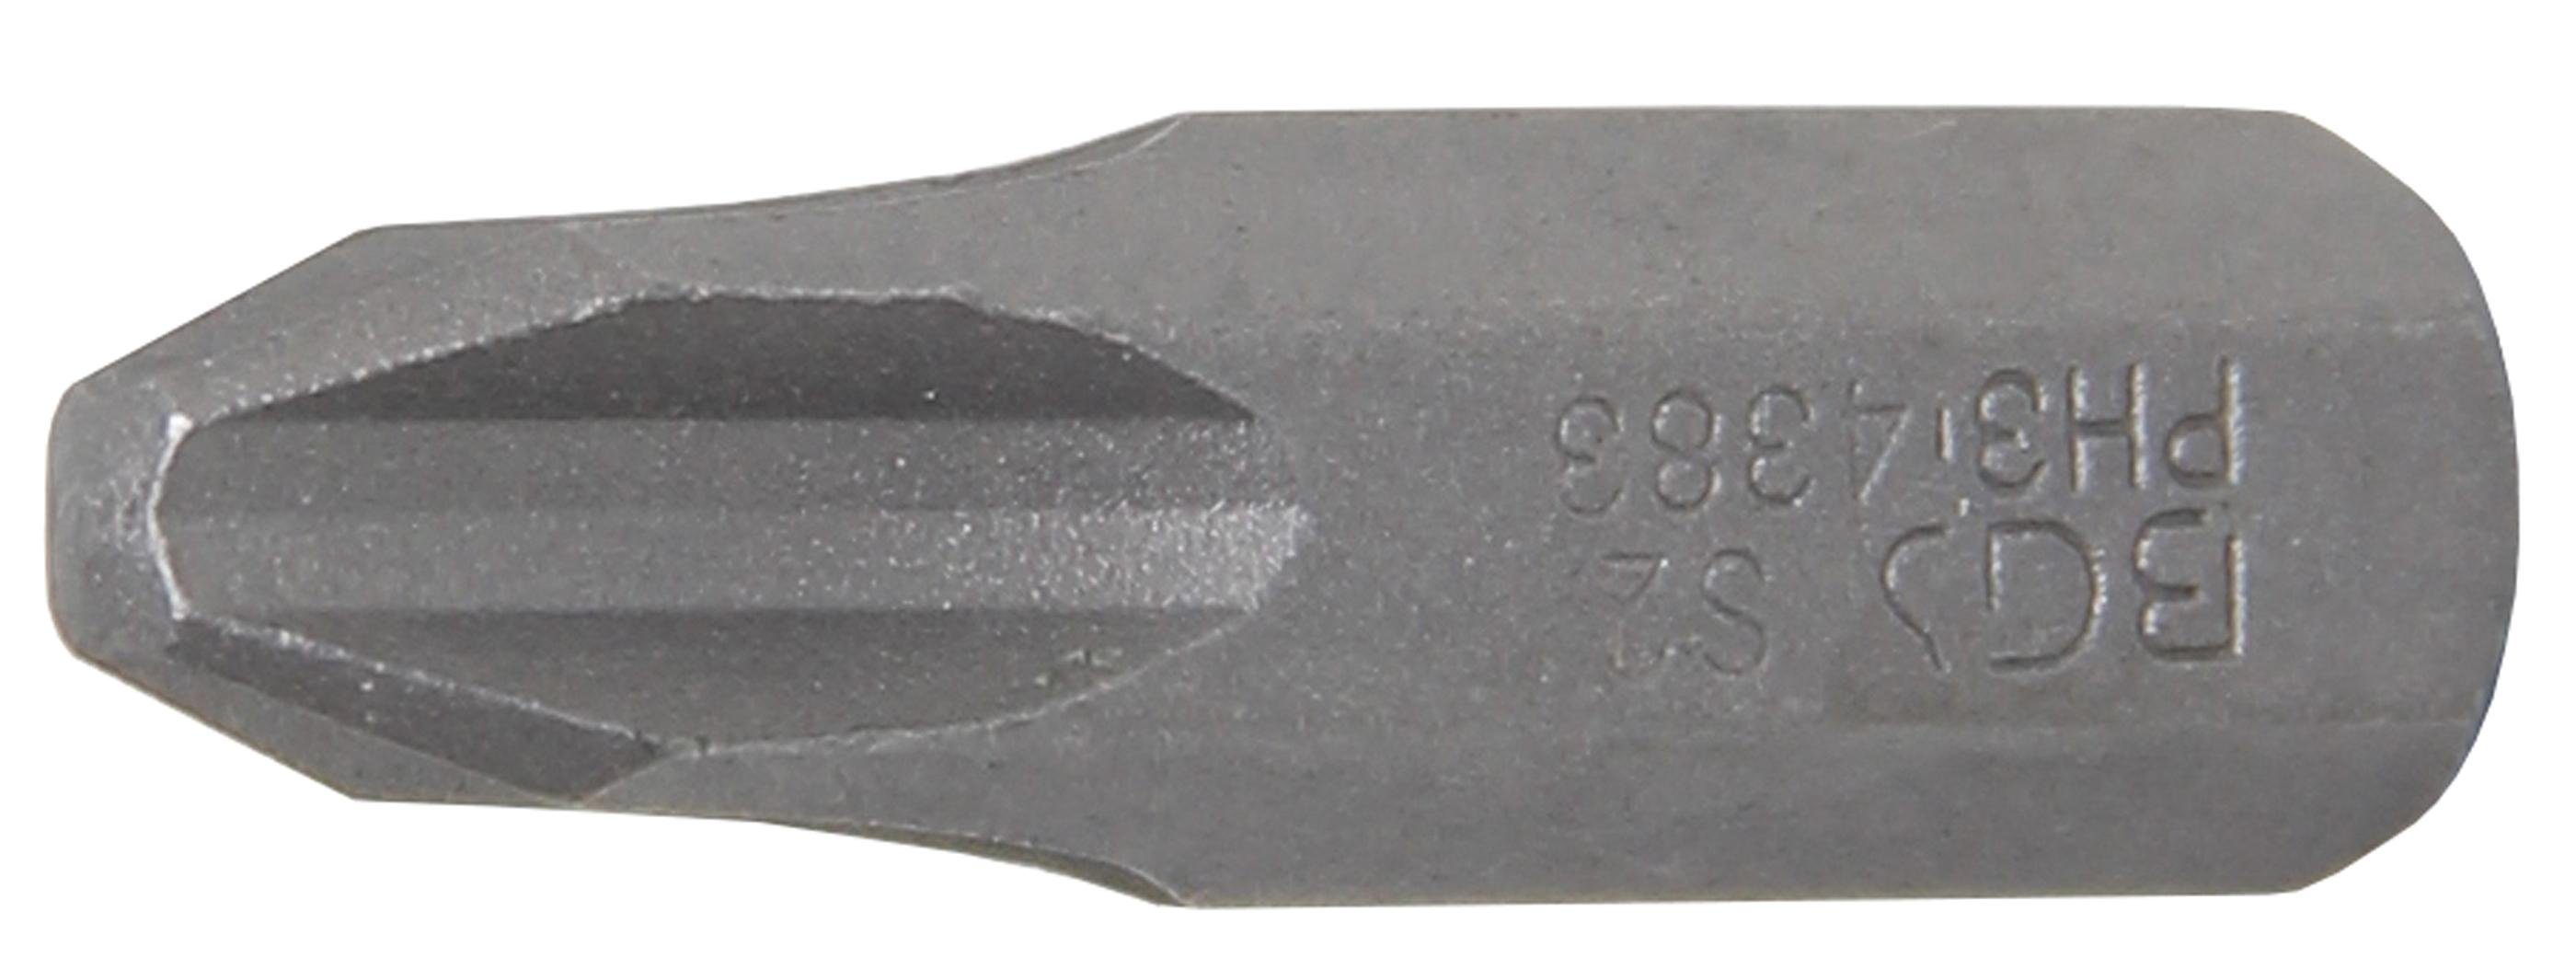 BGS technic Bit-Schraubendreher Bit, Antrieb Außensechskant 8 mm (5/16), Kreuzschlitz PH3 | Schraubendreher